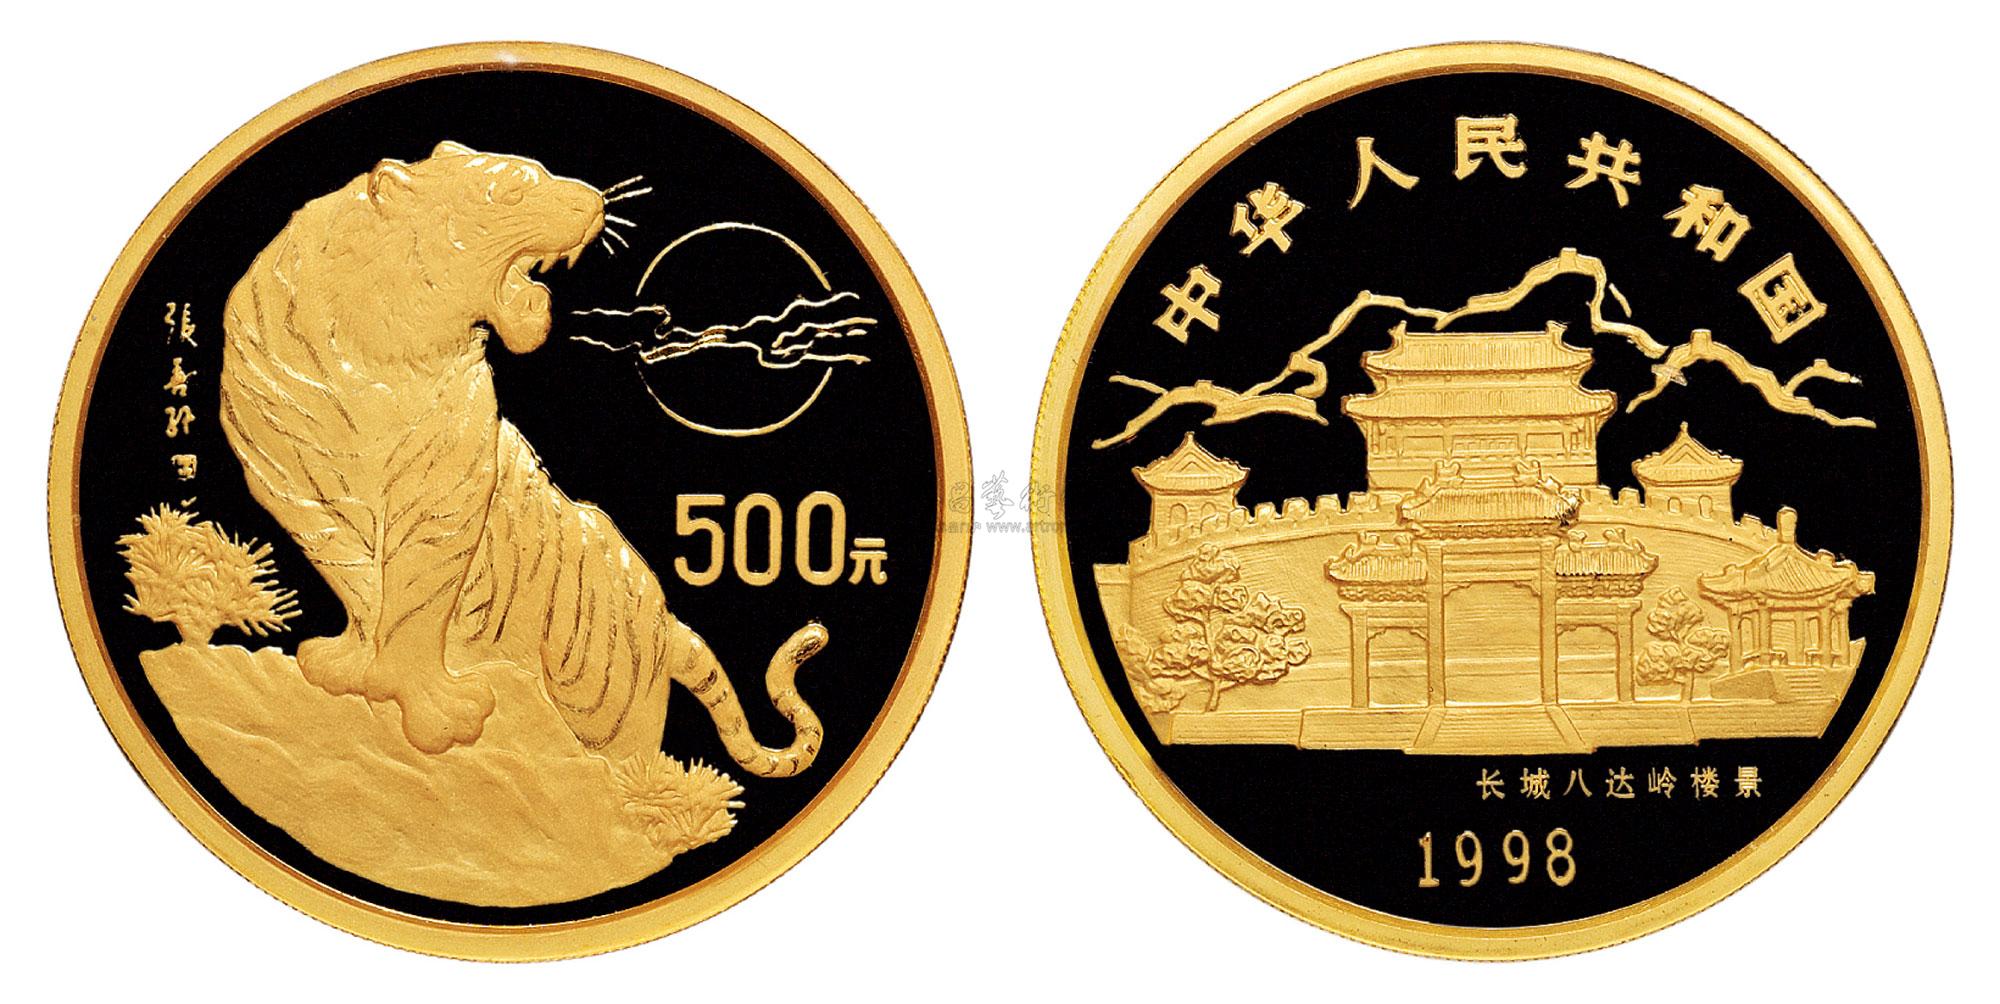 17961998年中国戊寅虎年生肖纪念金币一枚